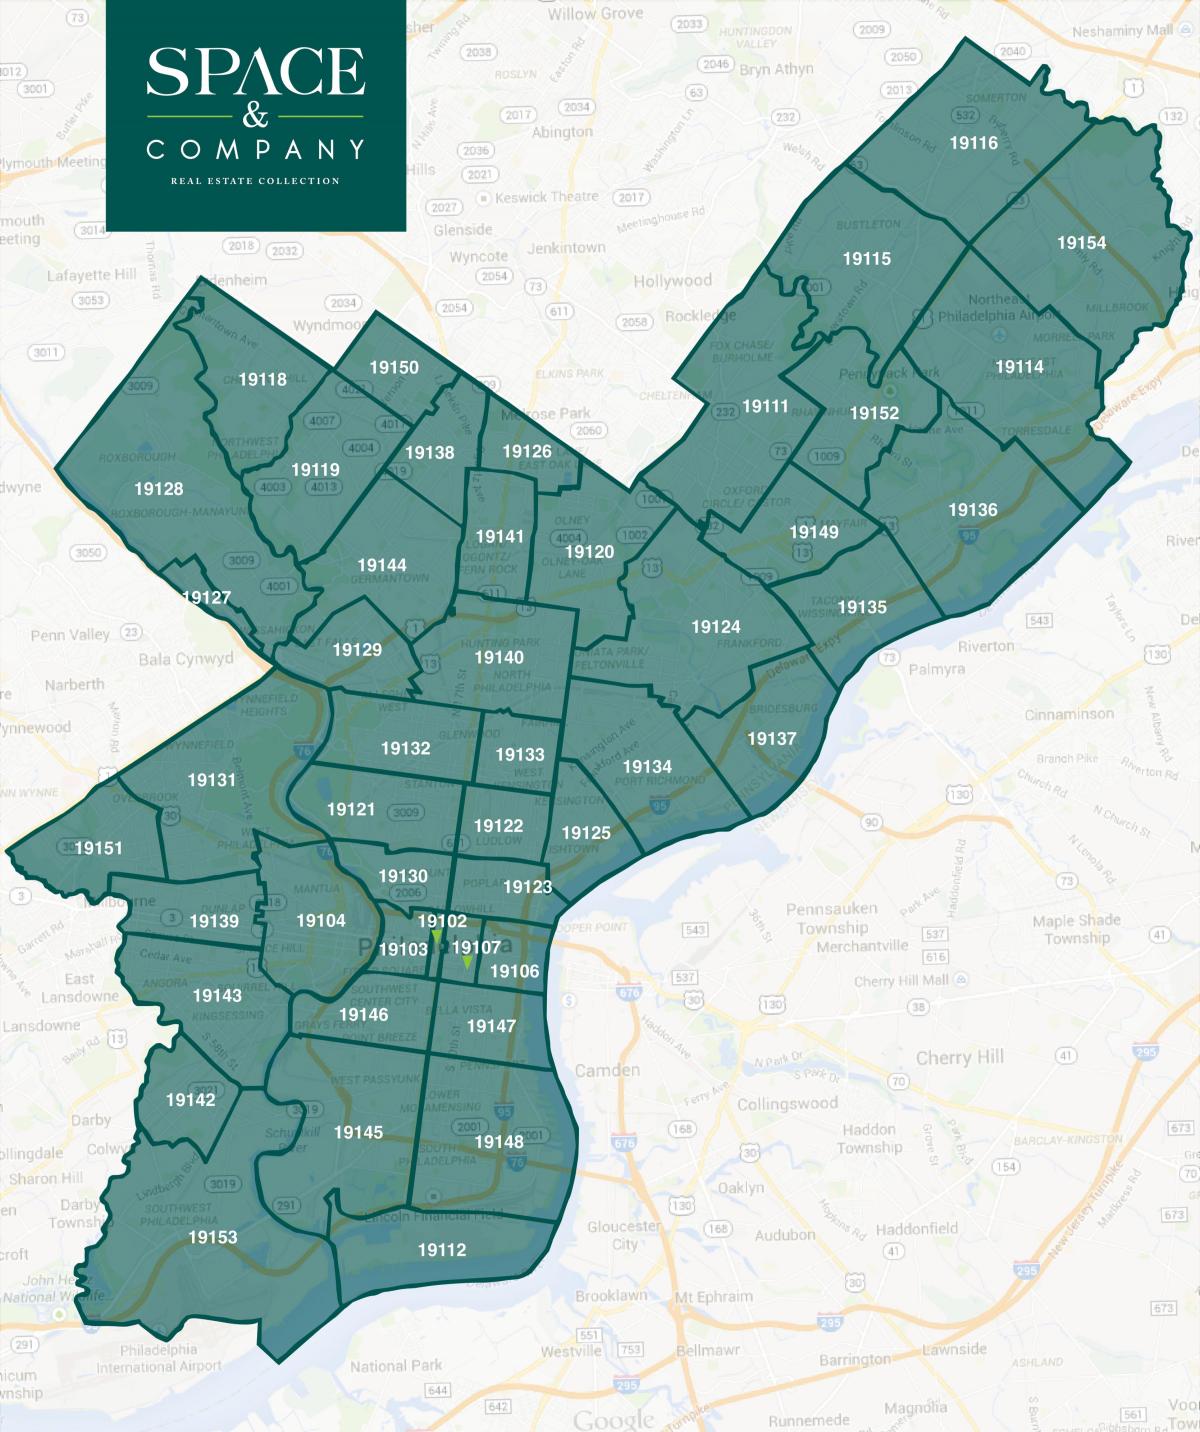 СПТА код на мапи Филаделфији